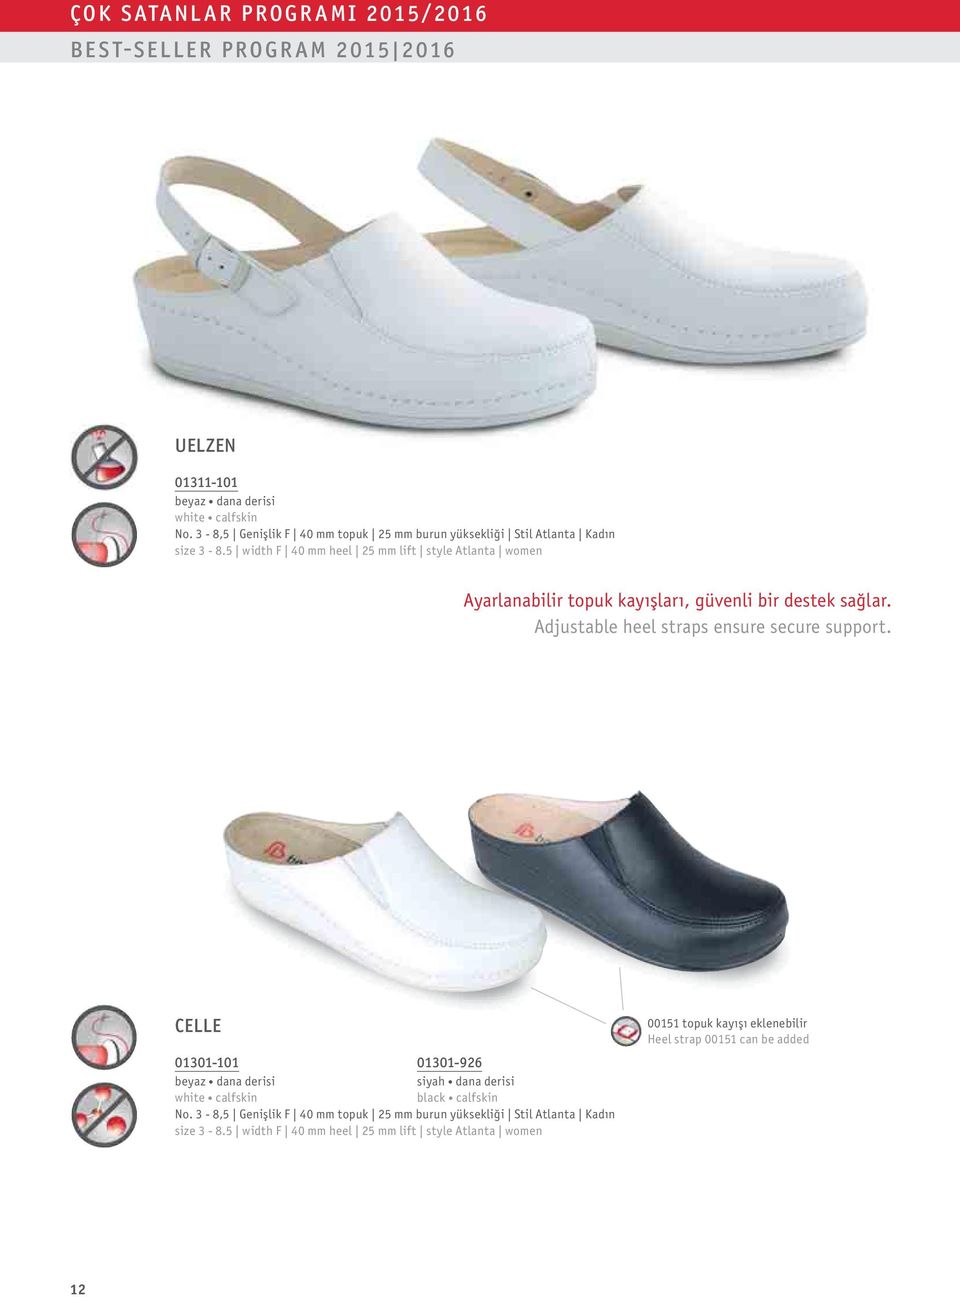 5 width F 40 mm heel 25 mm lift style Atlanta women Ayarlanabilir topuk kayışları, güvenli bir destek sağlar. Adjustable heel straps ensure secure support.